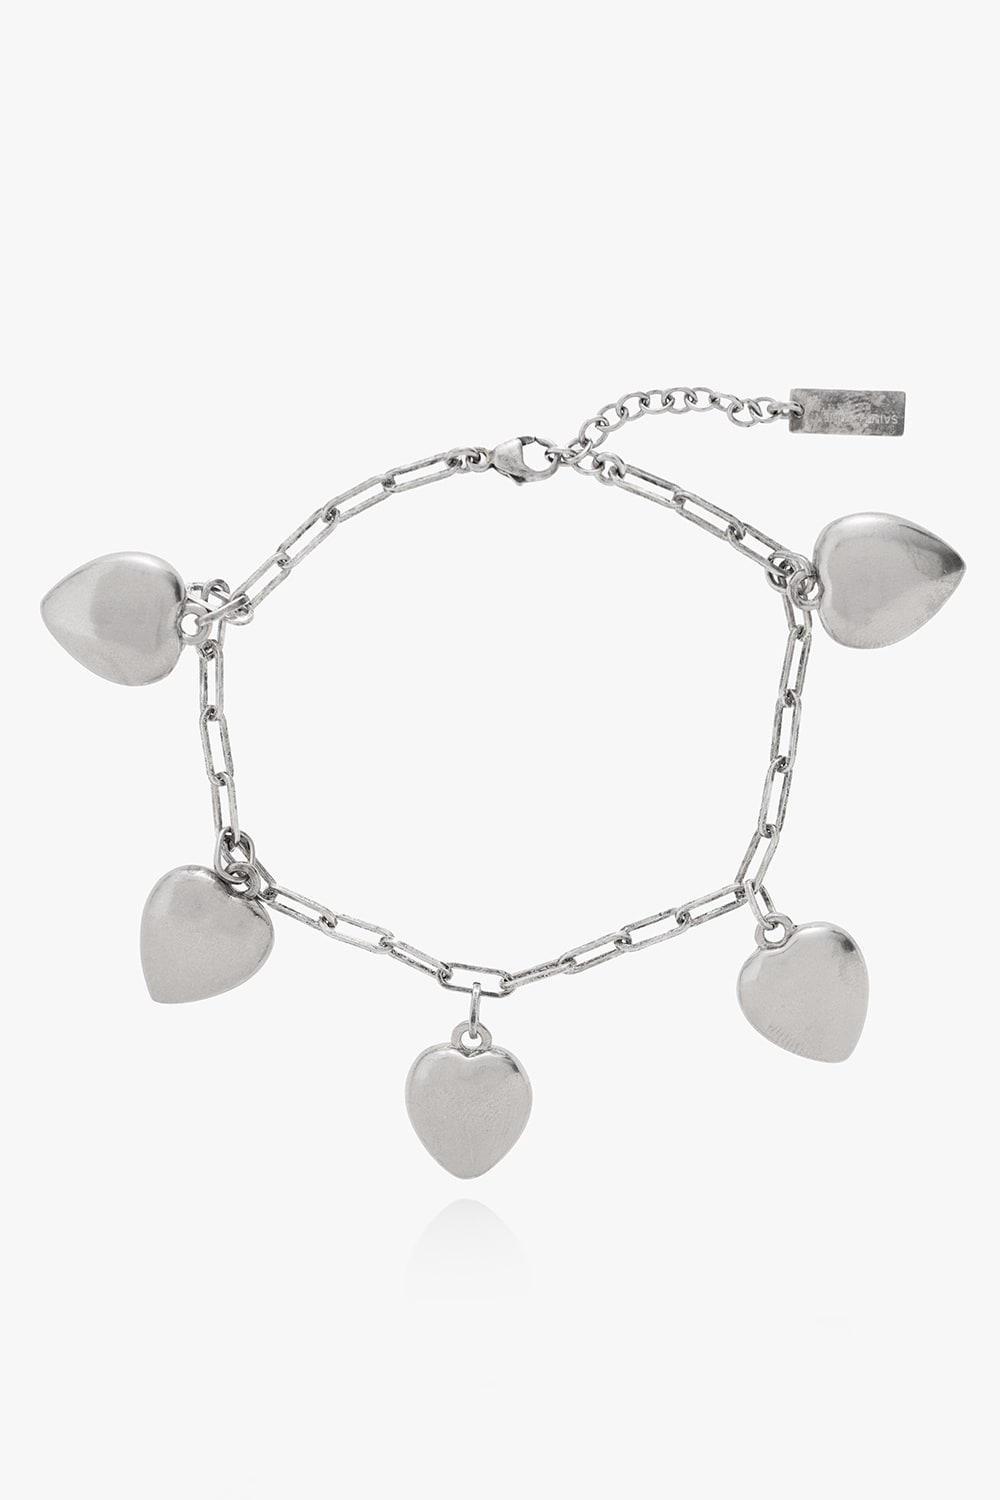 Shop Saint Laurent Dangling Heart Charm Bracelet